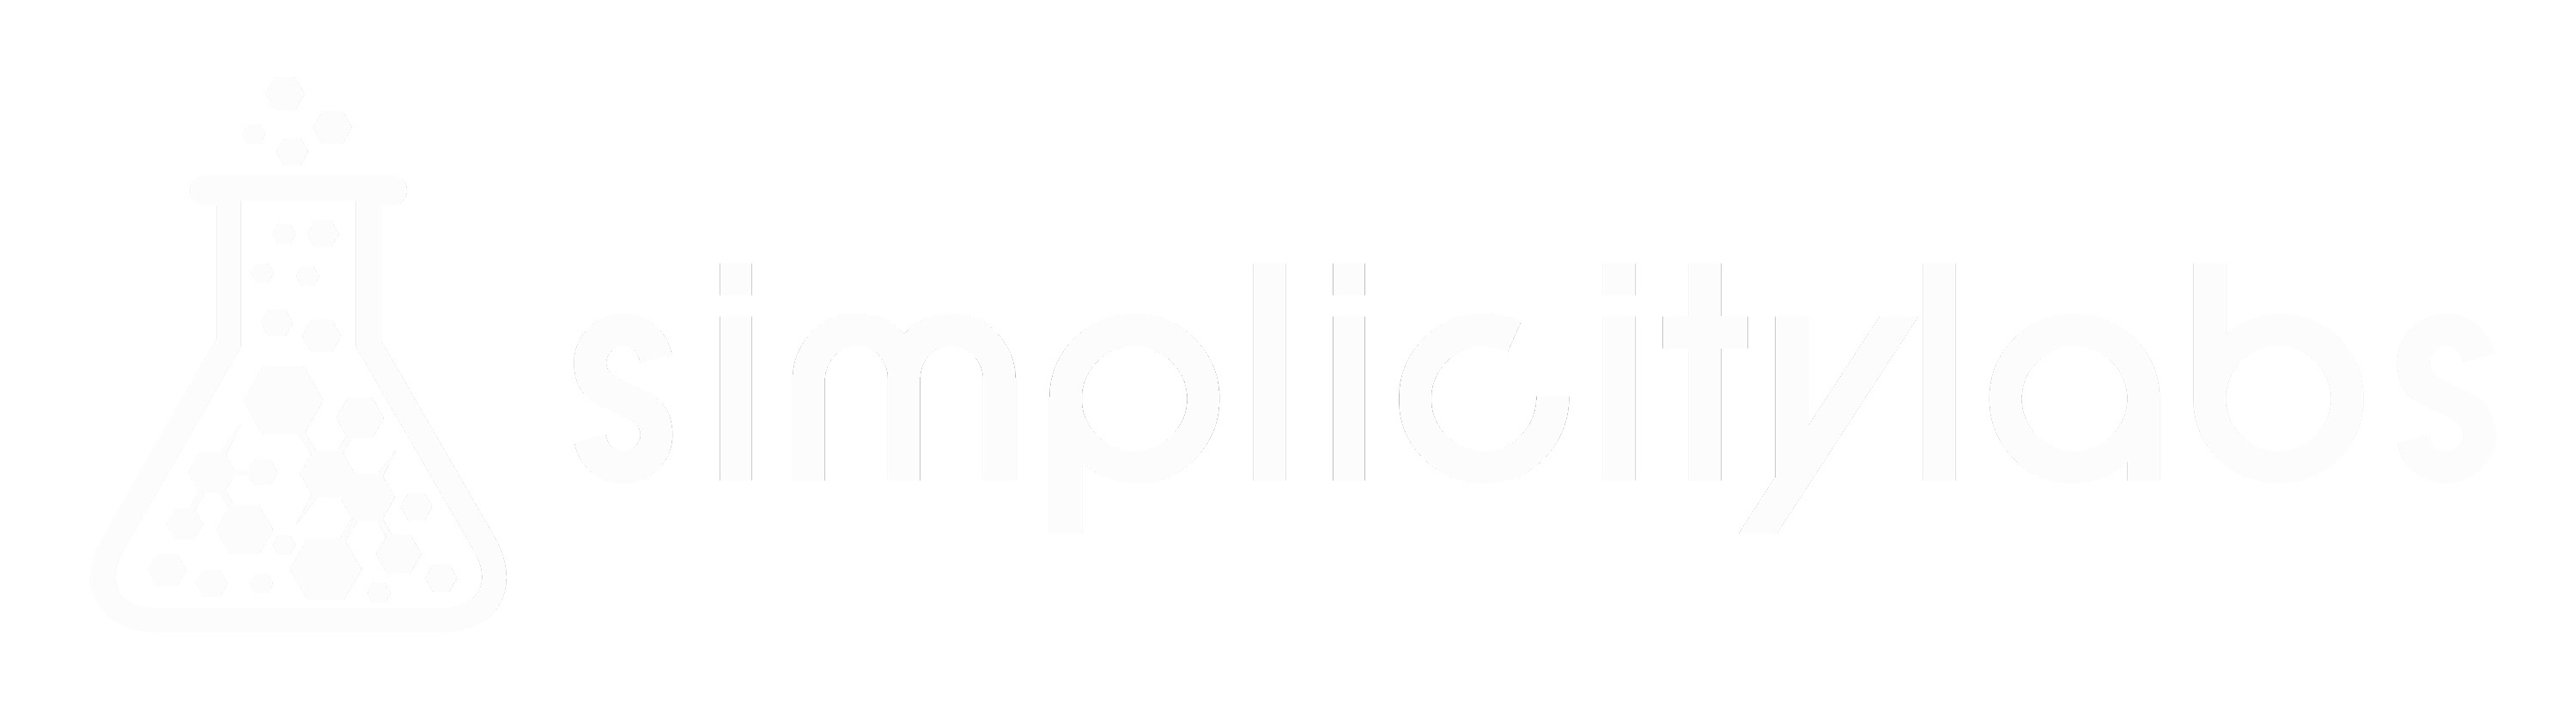 Simplicitylabs logo